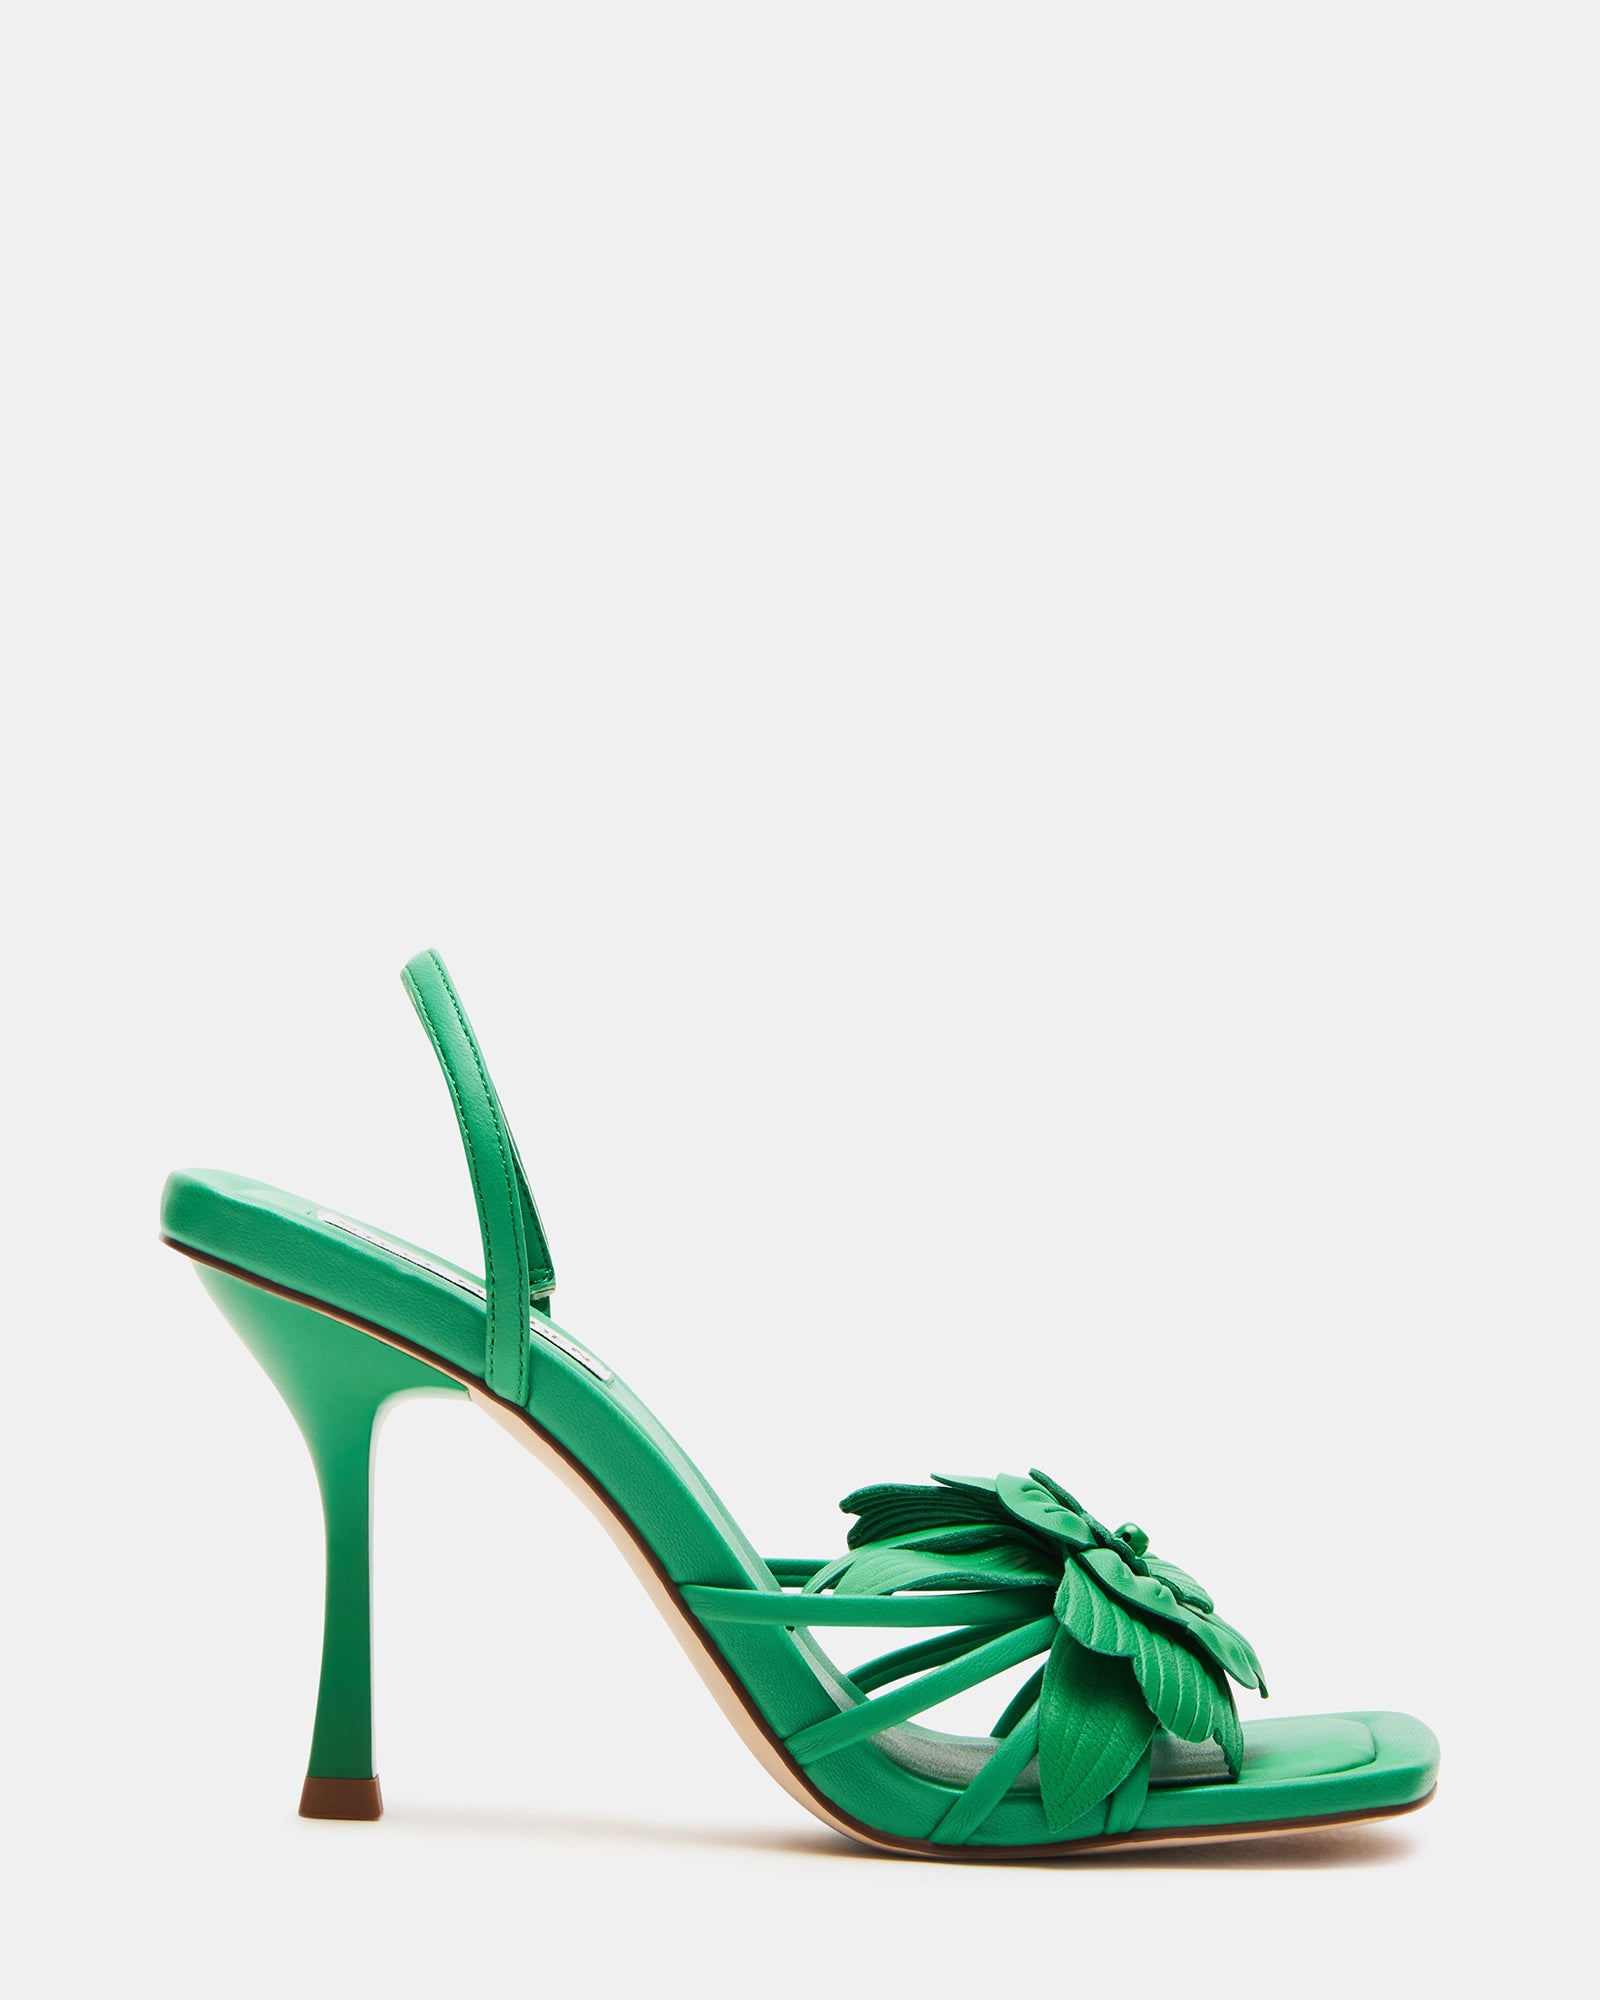 Green heels